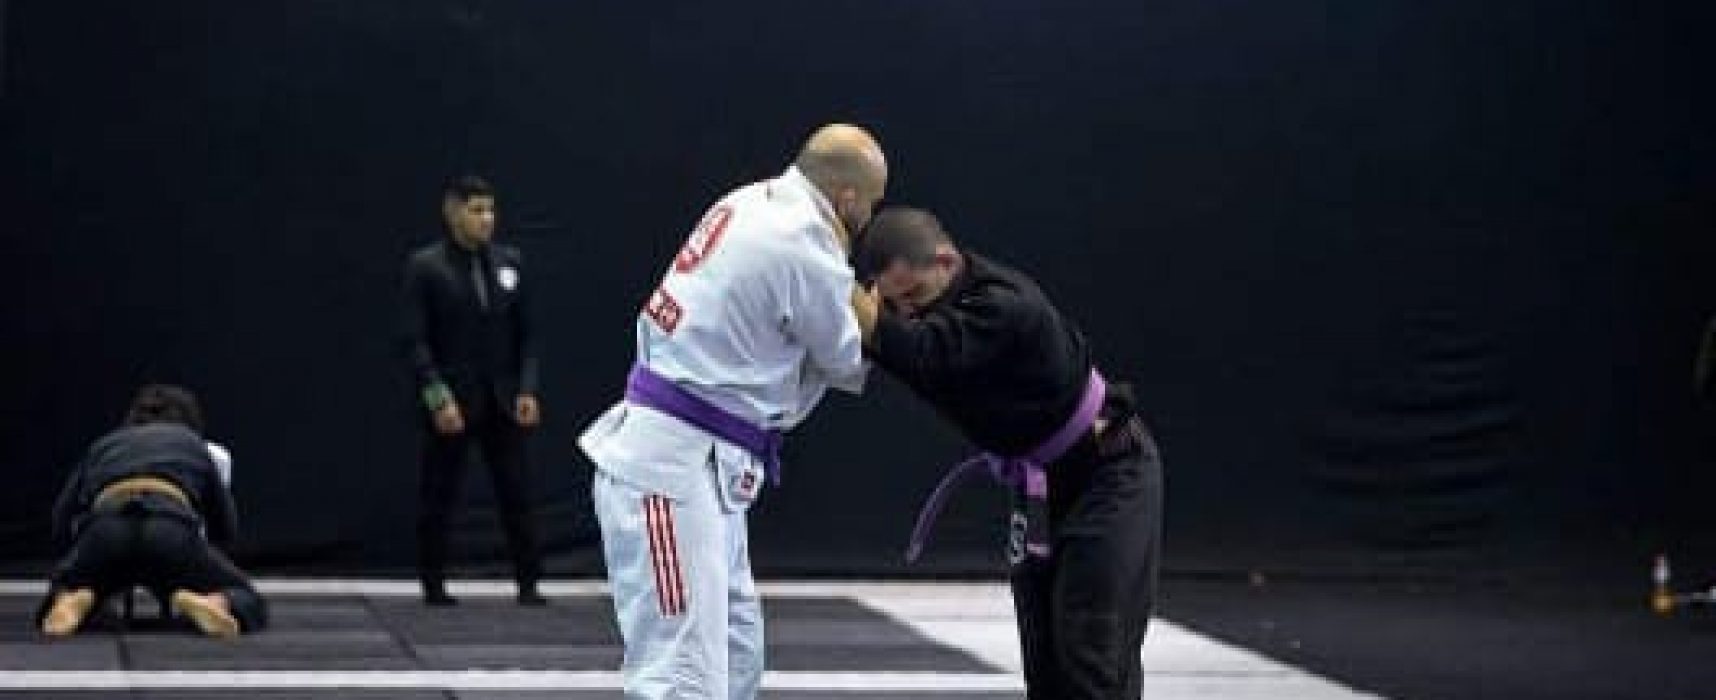 Atleta de Ilhabela conquista quatro medalhas no campeonato internacional bjj São Paulo de jiu-jitsu.